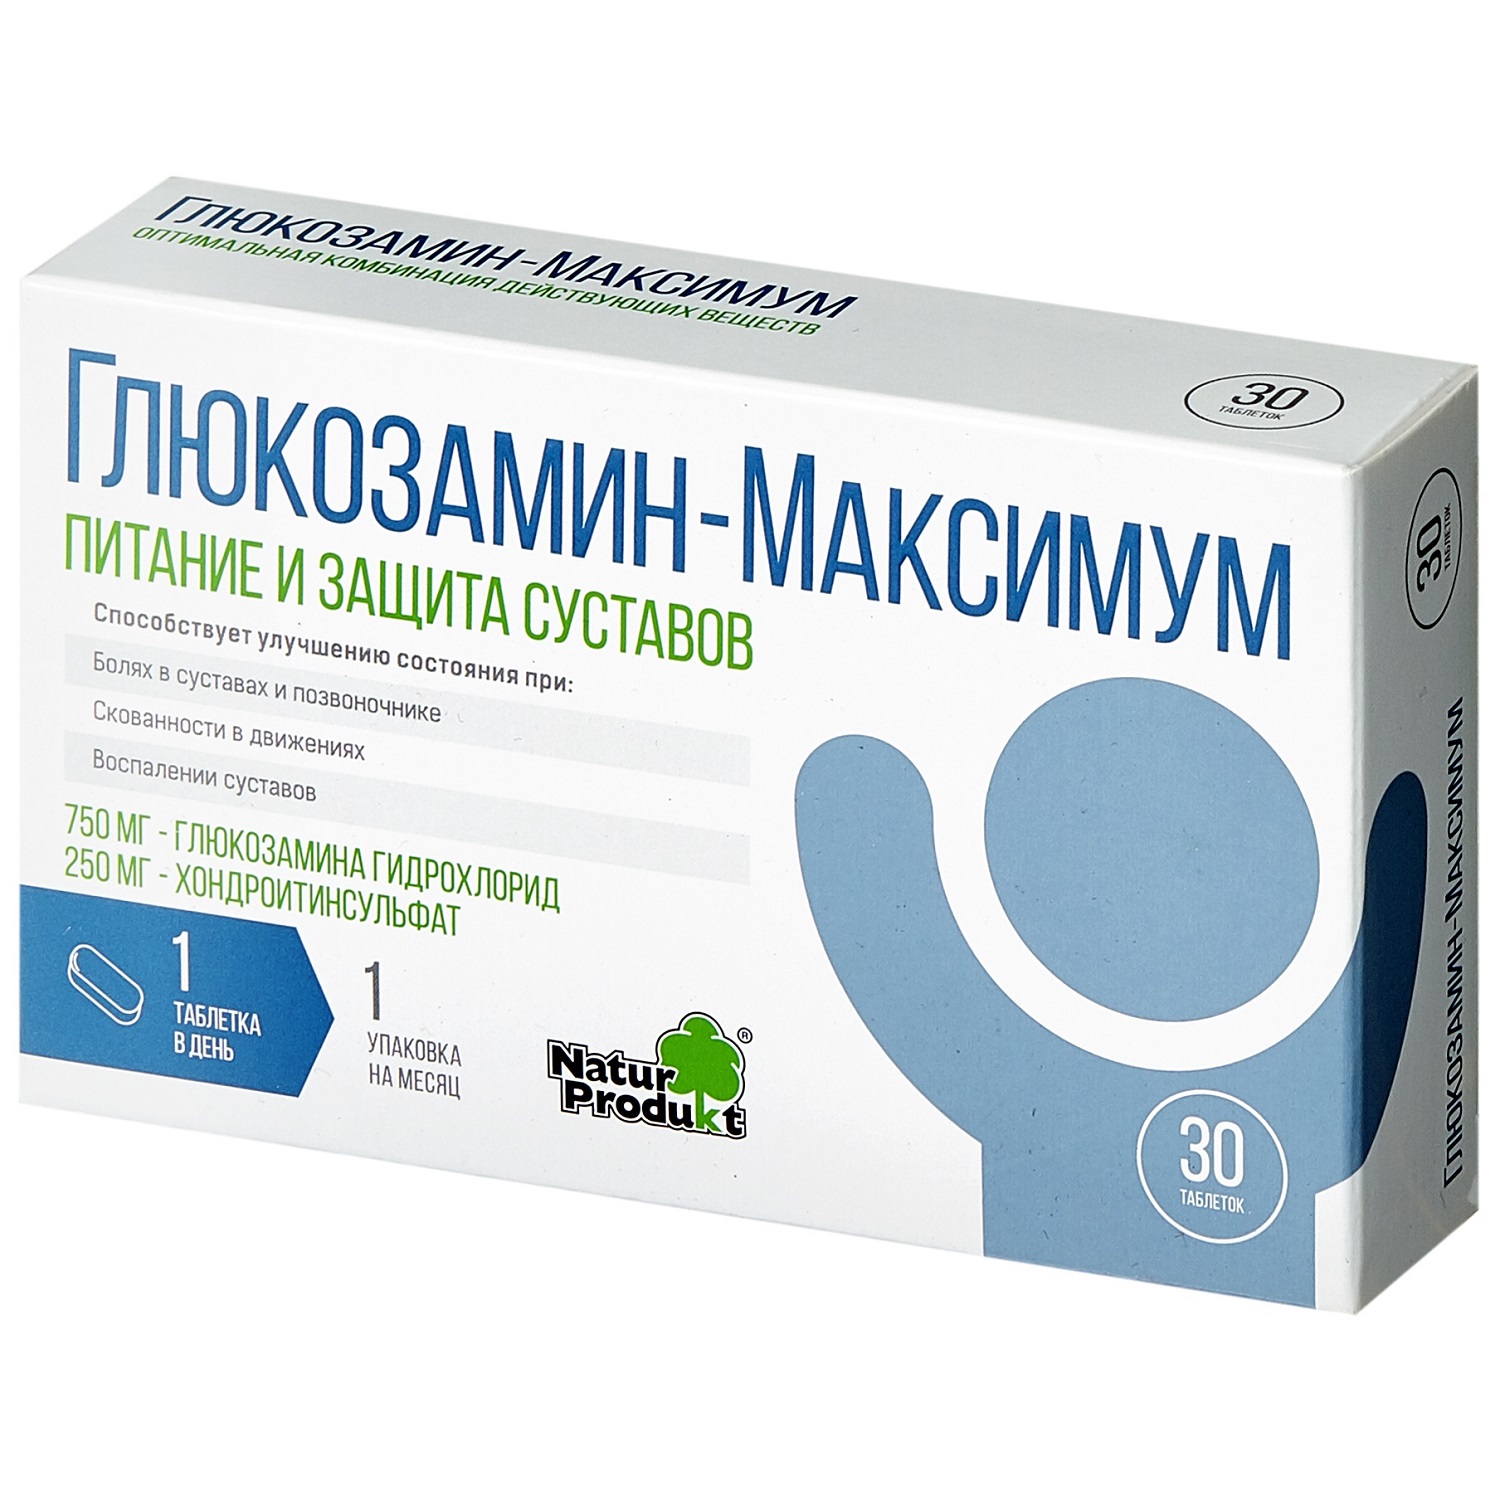 Купить Глюкозамин Максимум таб. №30, Natur Produkt